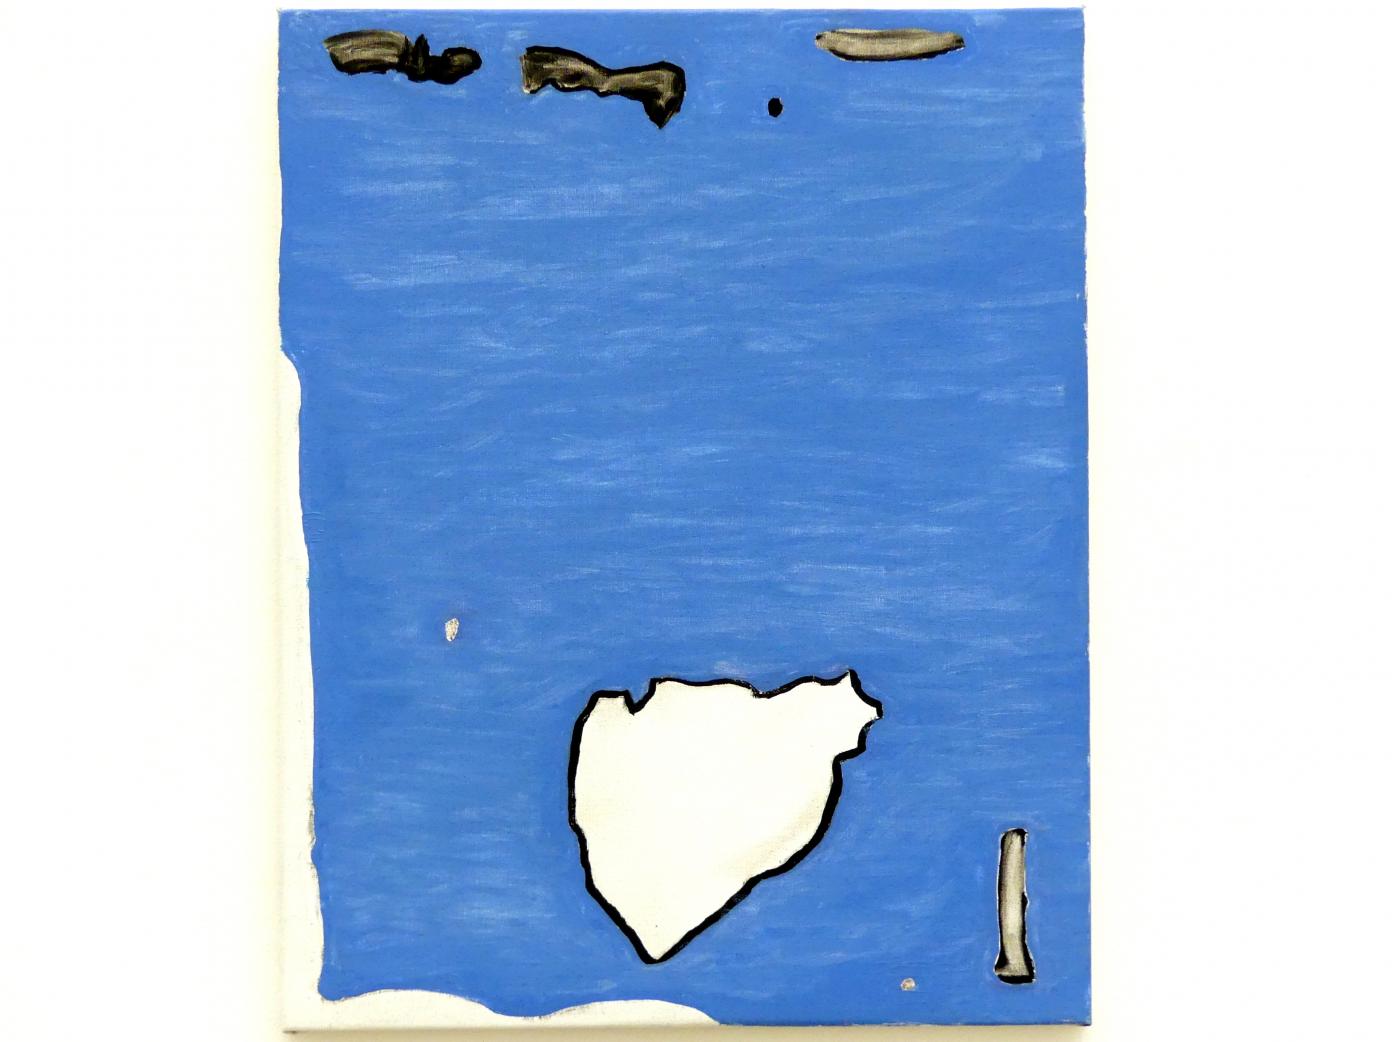 Raoul De Keyser (1964–2012), Blue Note, München, Pinakothek der Moderne, Ausstellung "Raoul De Keyser – Œuvre" vom 05.04.-08.09.2019, Saal 26, 2006